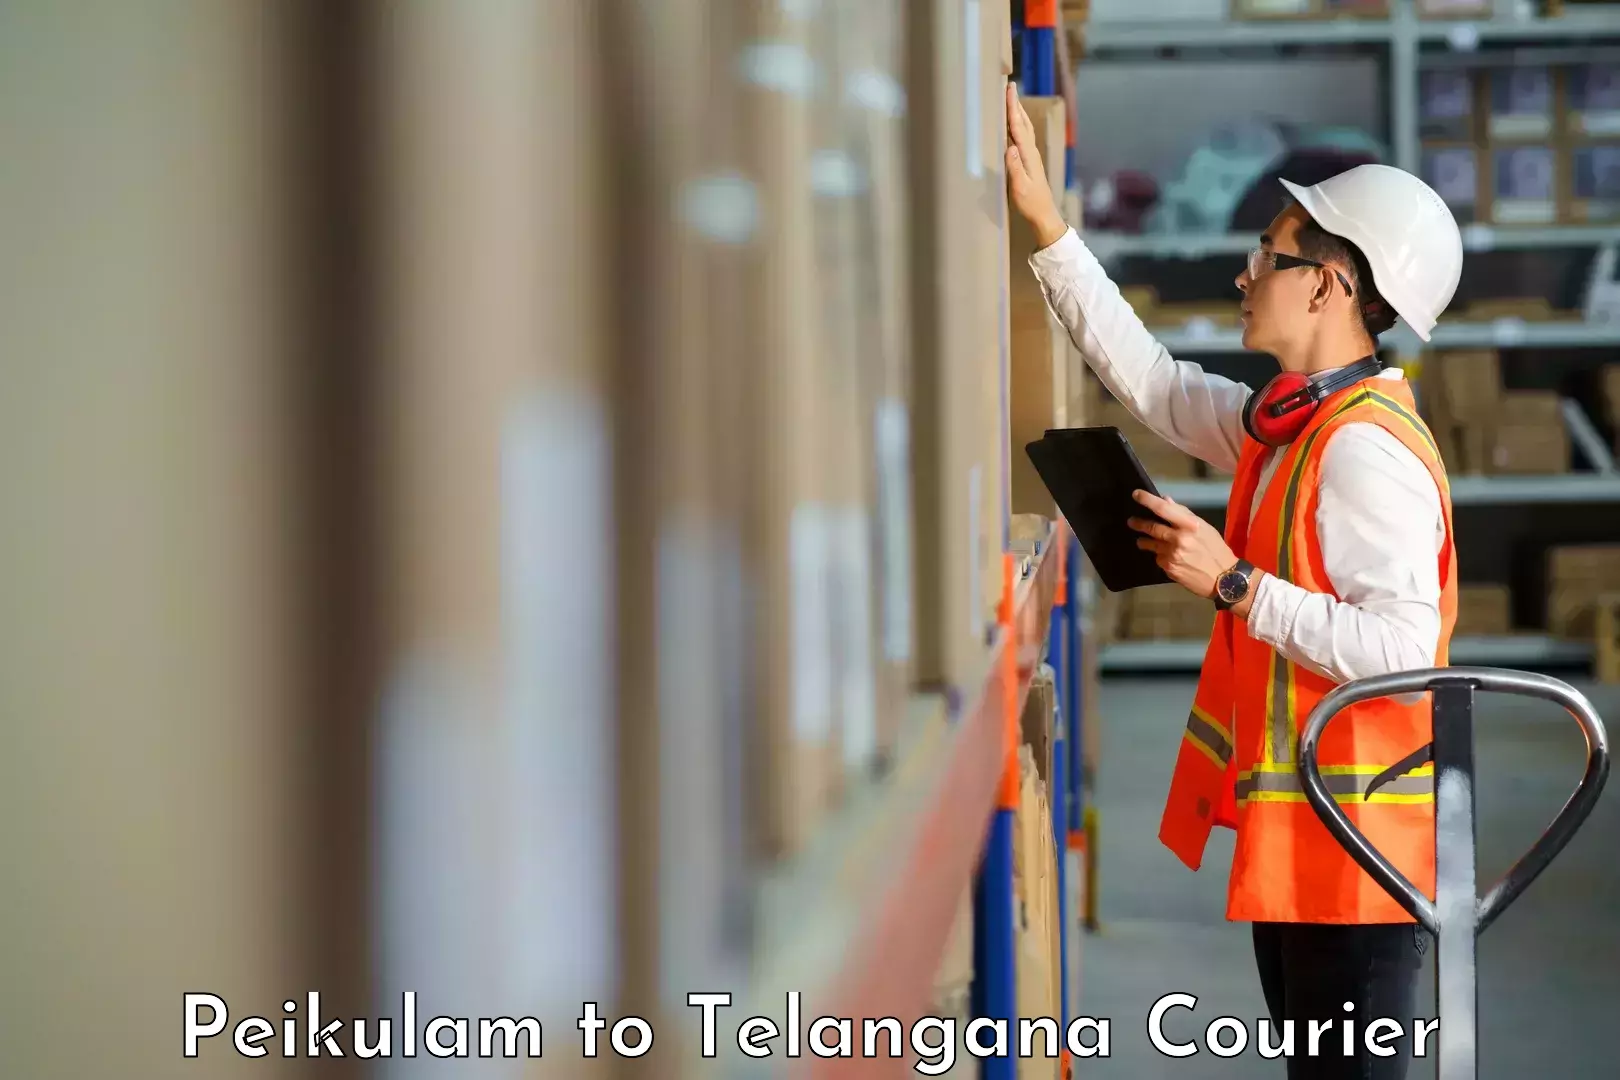 State-of-the-art courier technology Peikulam to Yellandu